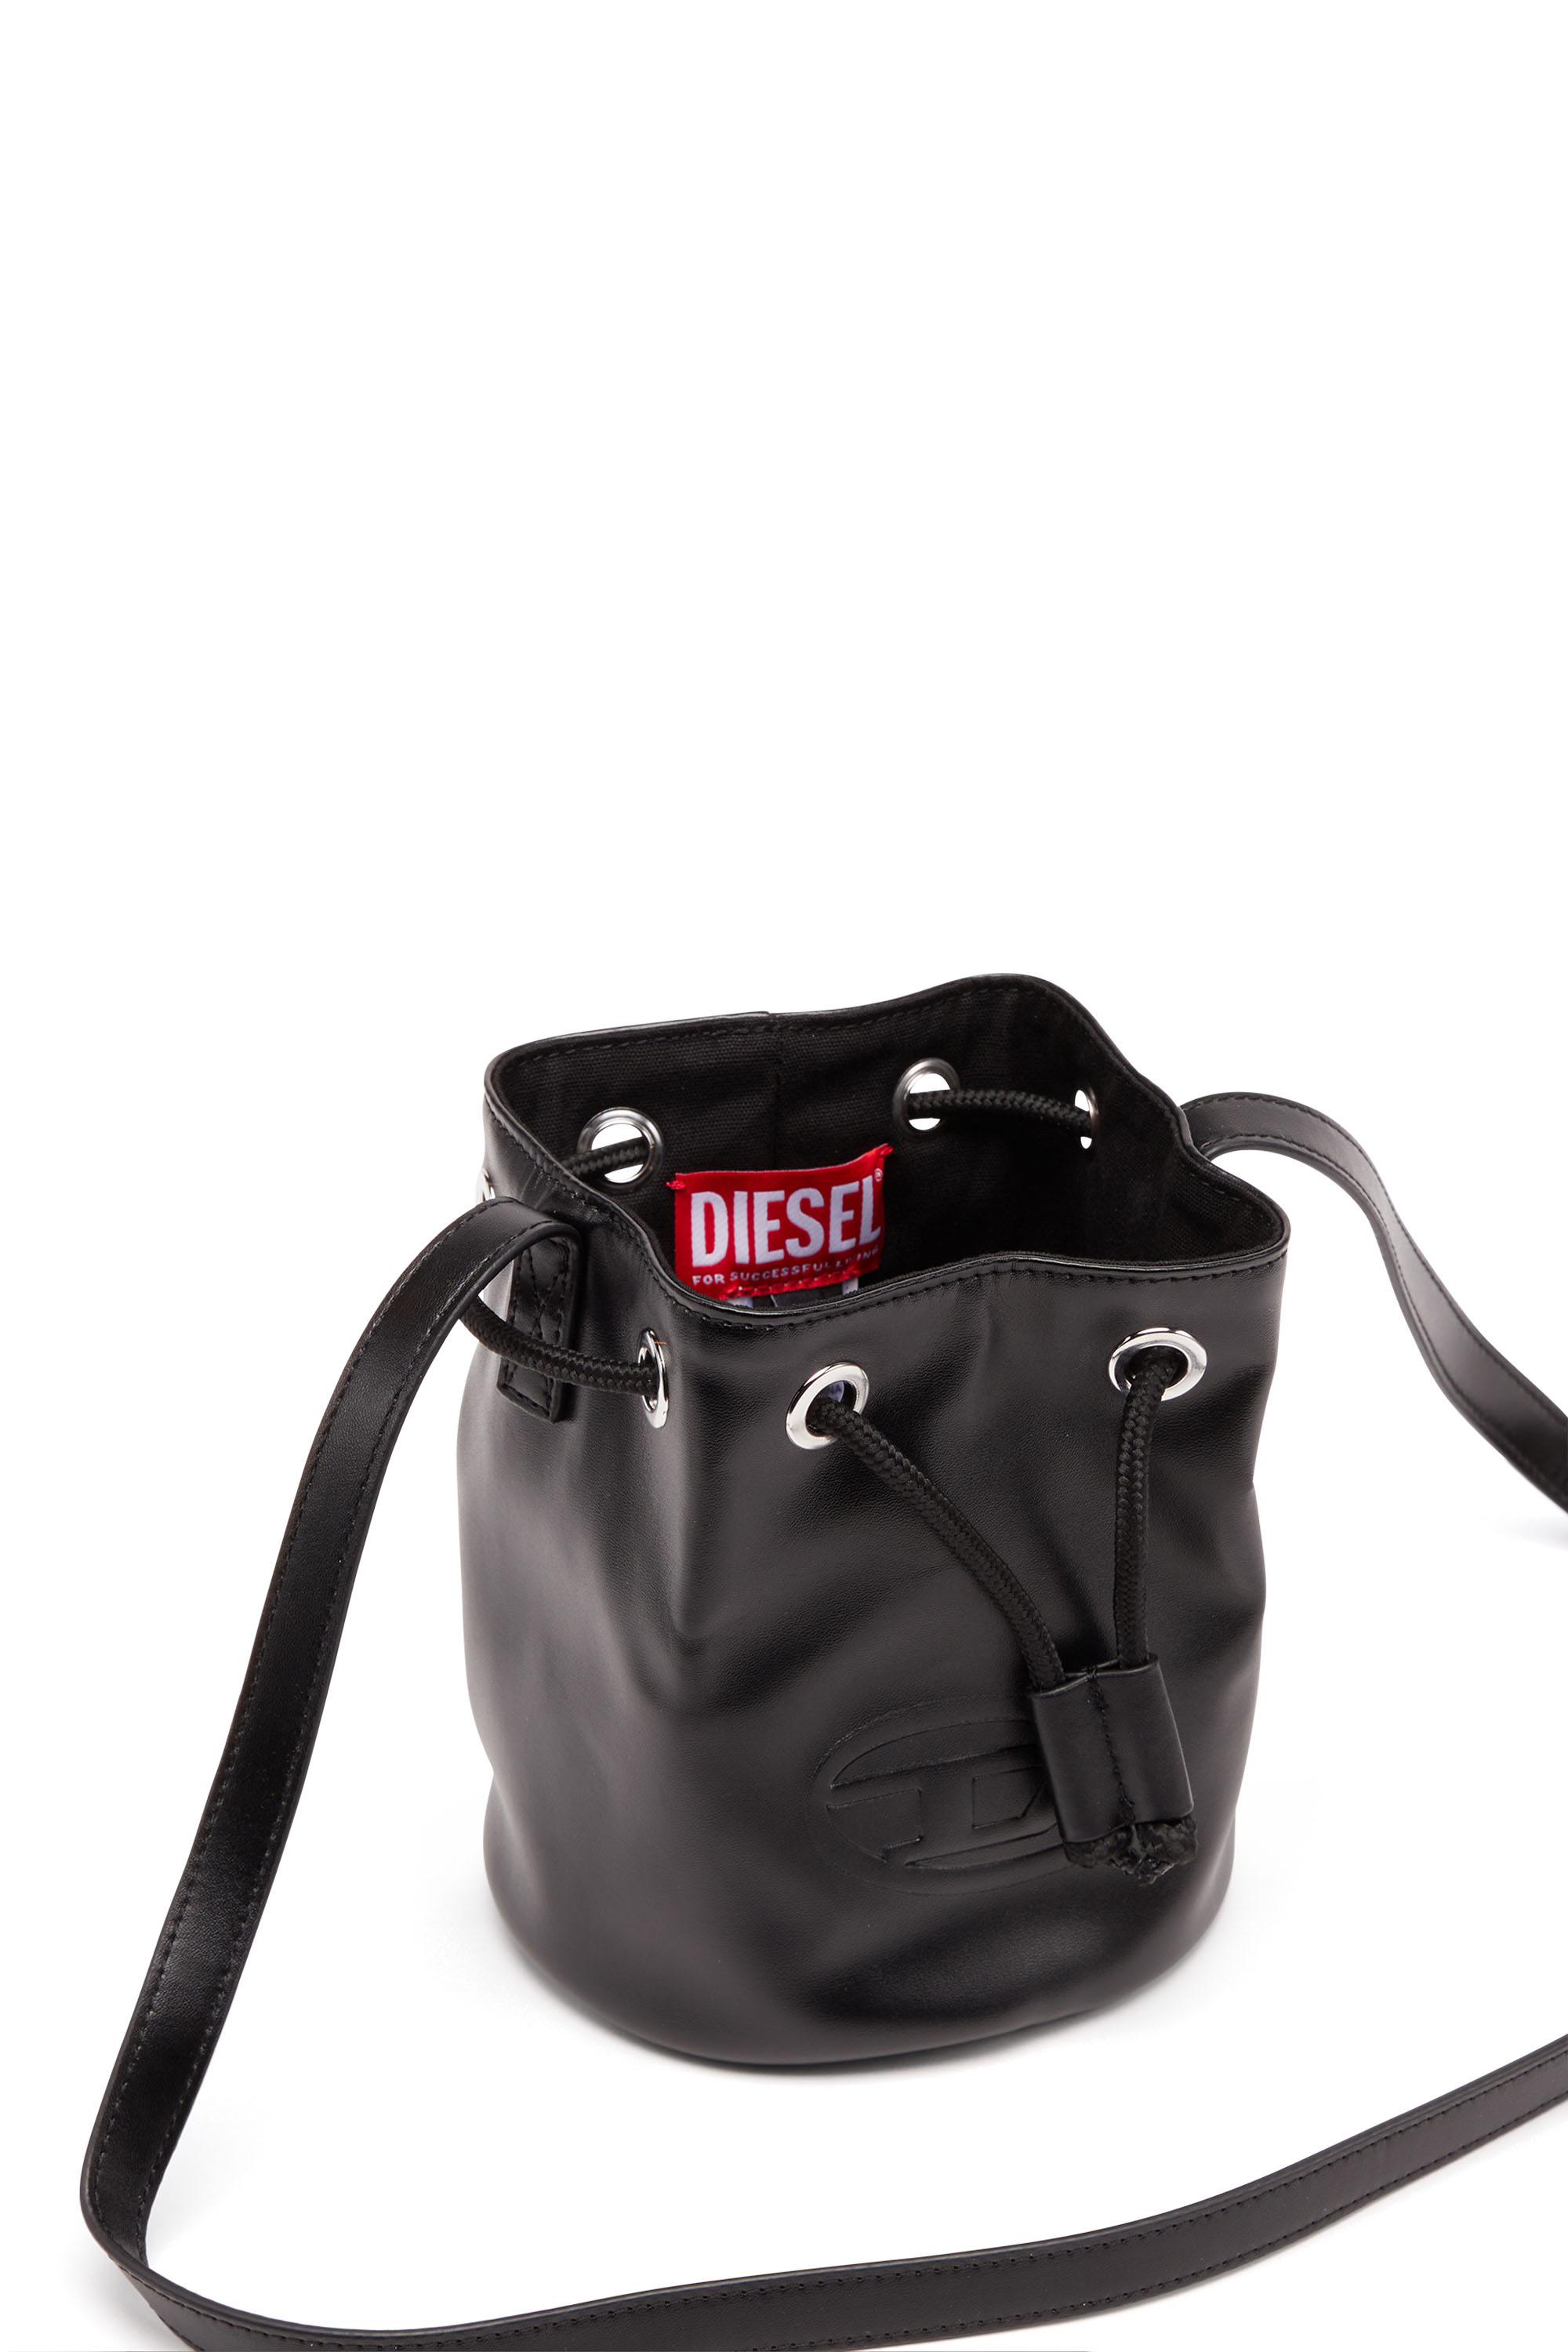 Diesel - WELLTY, Black - Image 4